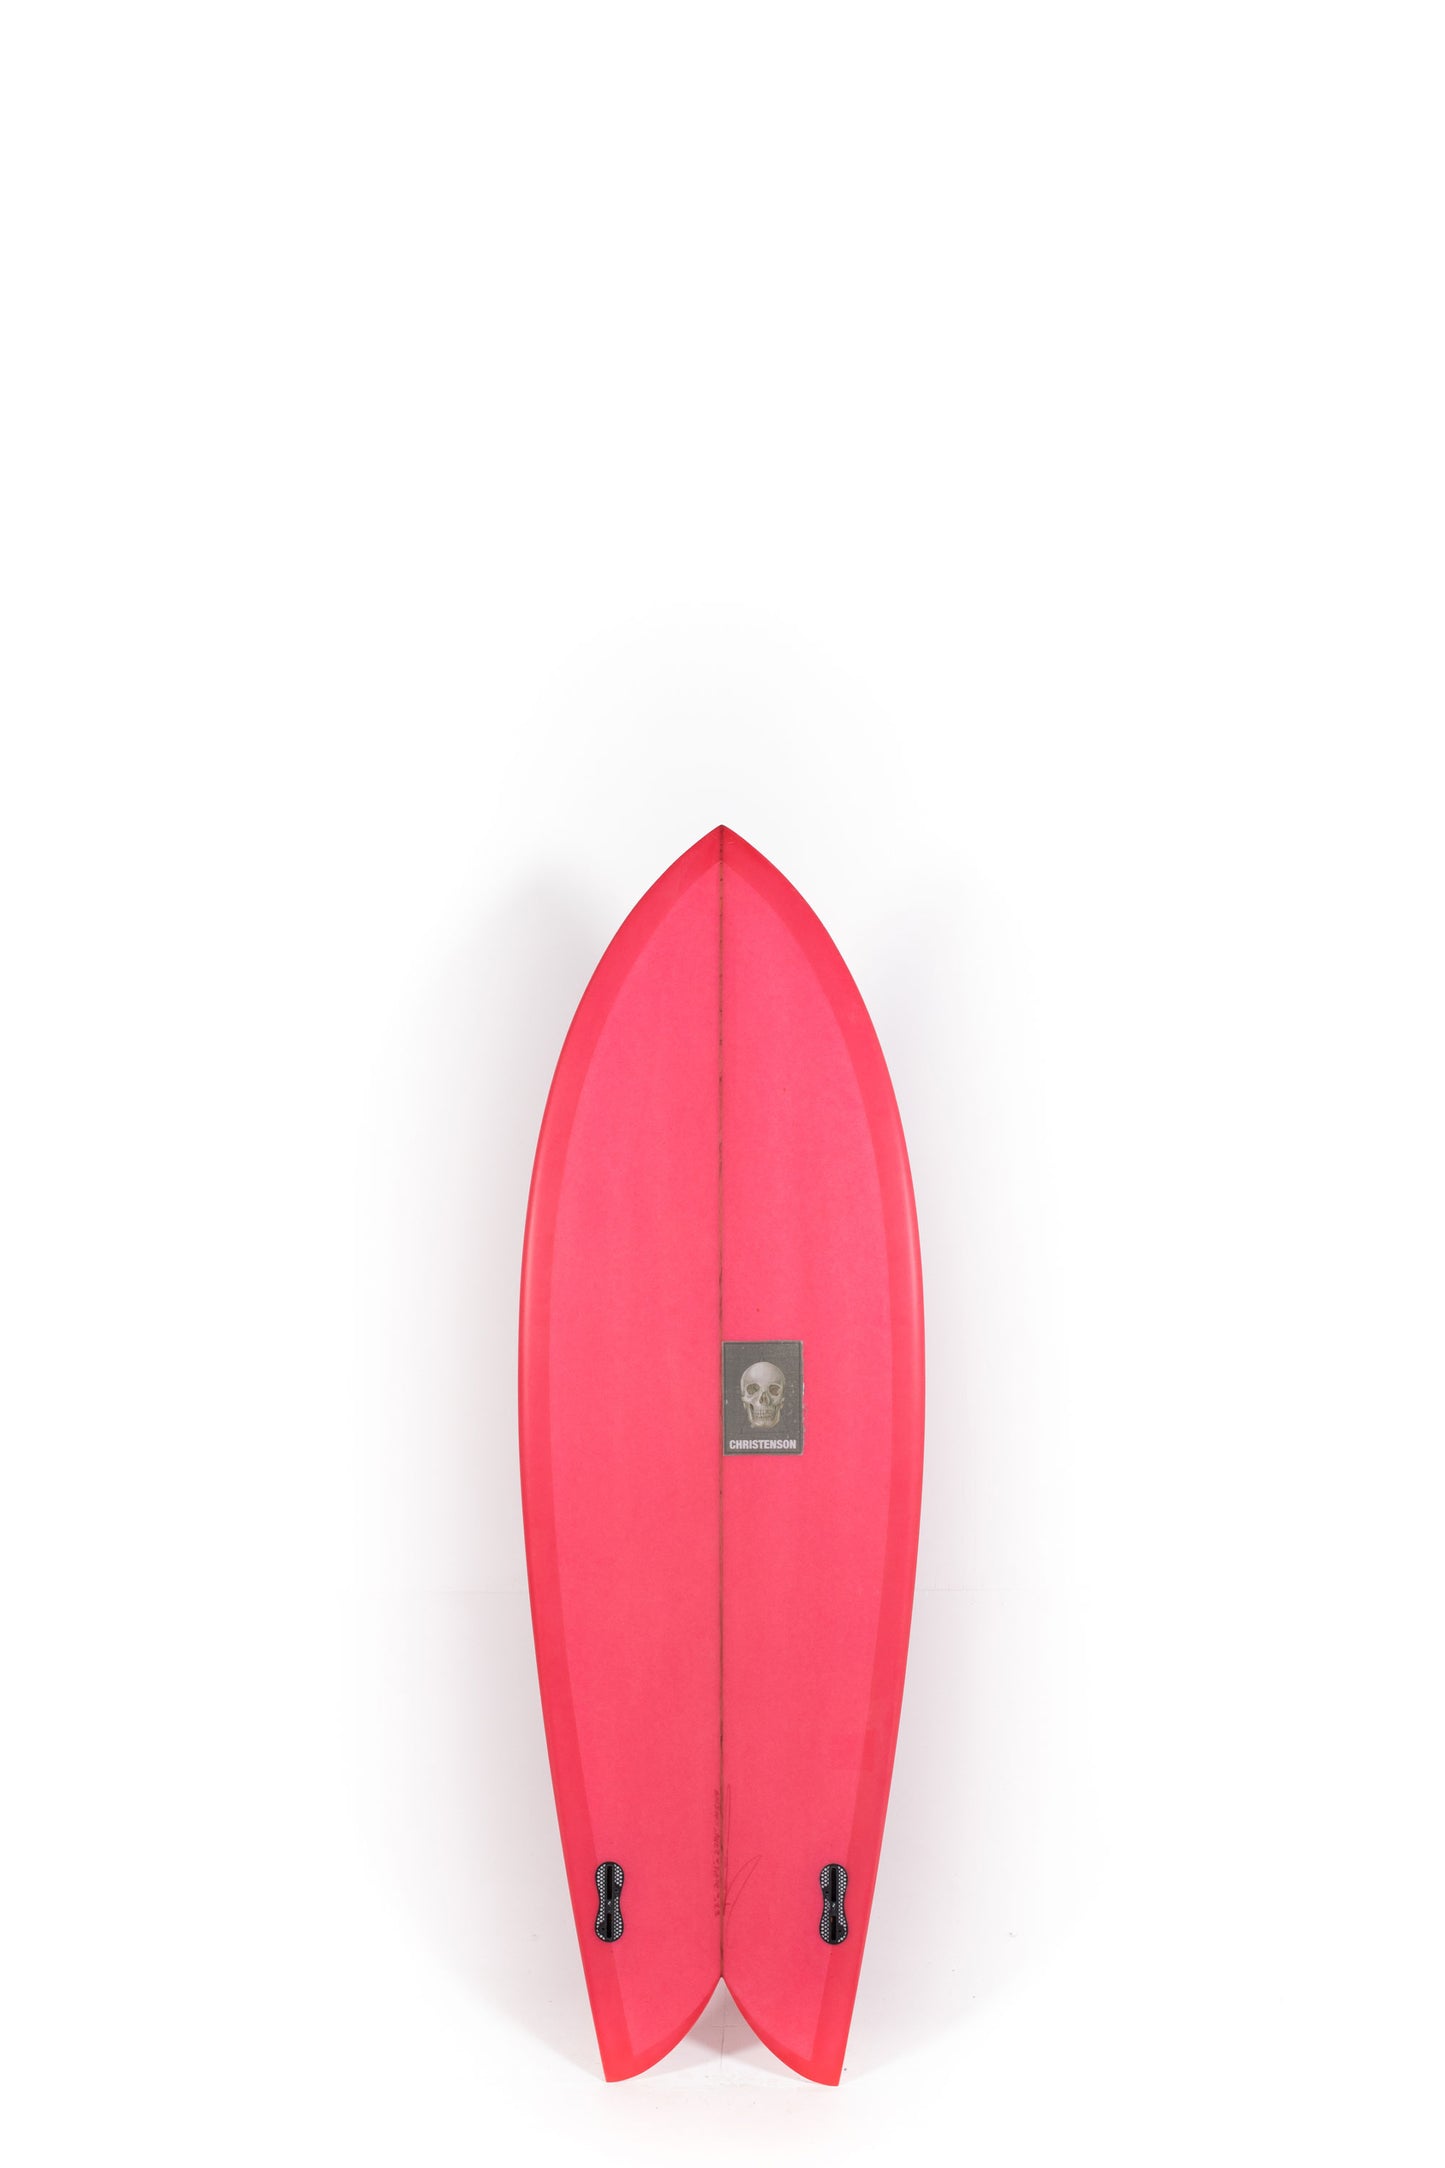 Pukas Surf Shop - Christenson Surfboards - CHRIS FISH - 5'6" x 20 7/8 x 2 7/16 - CX05007